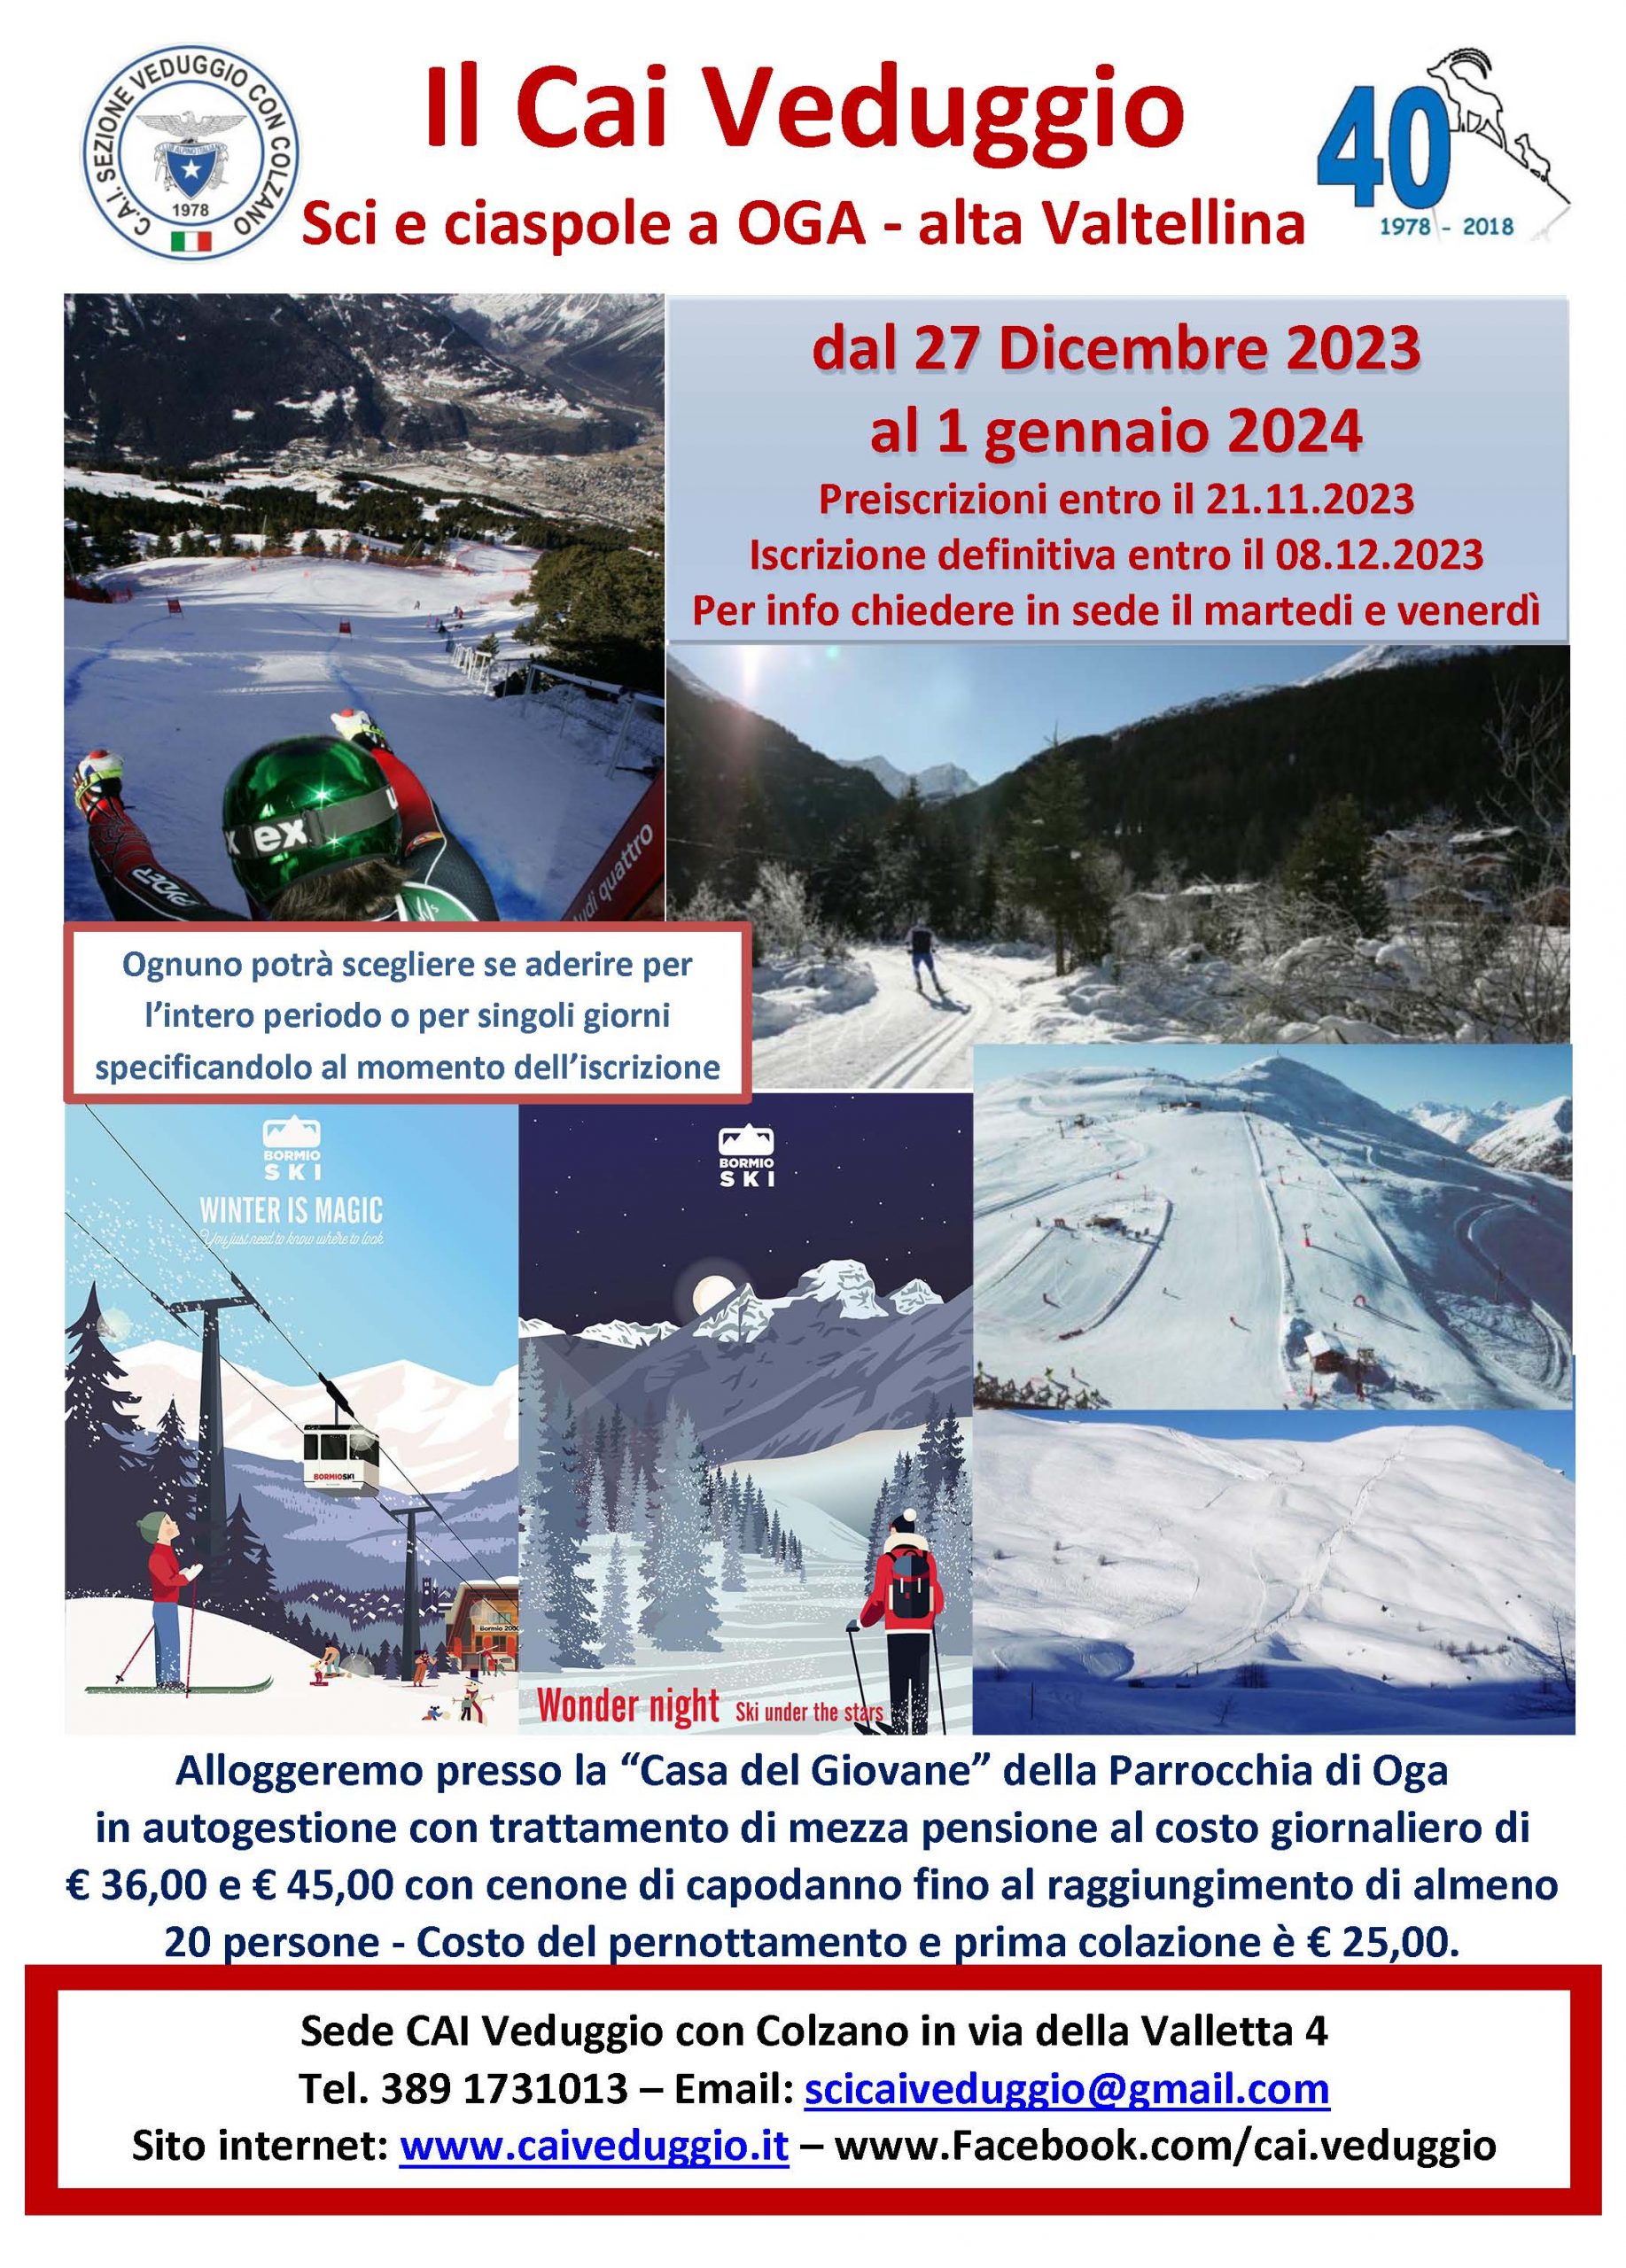 Sci e ciaspole ad Oga (alta Valtellina) dal 27 dicembre 2023 al 1 gennaio 2024